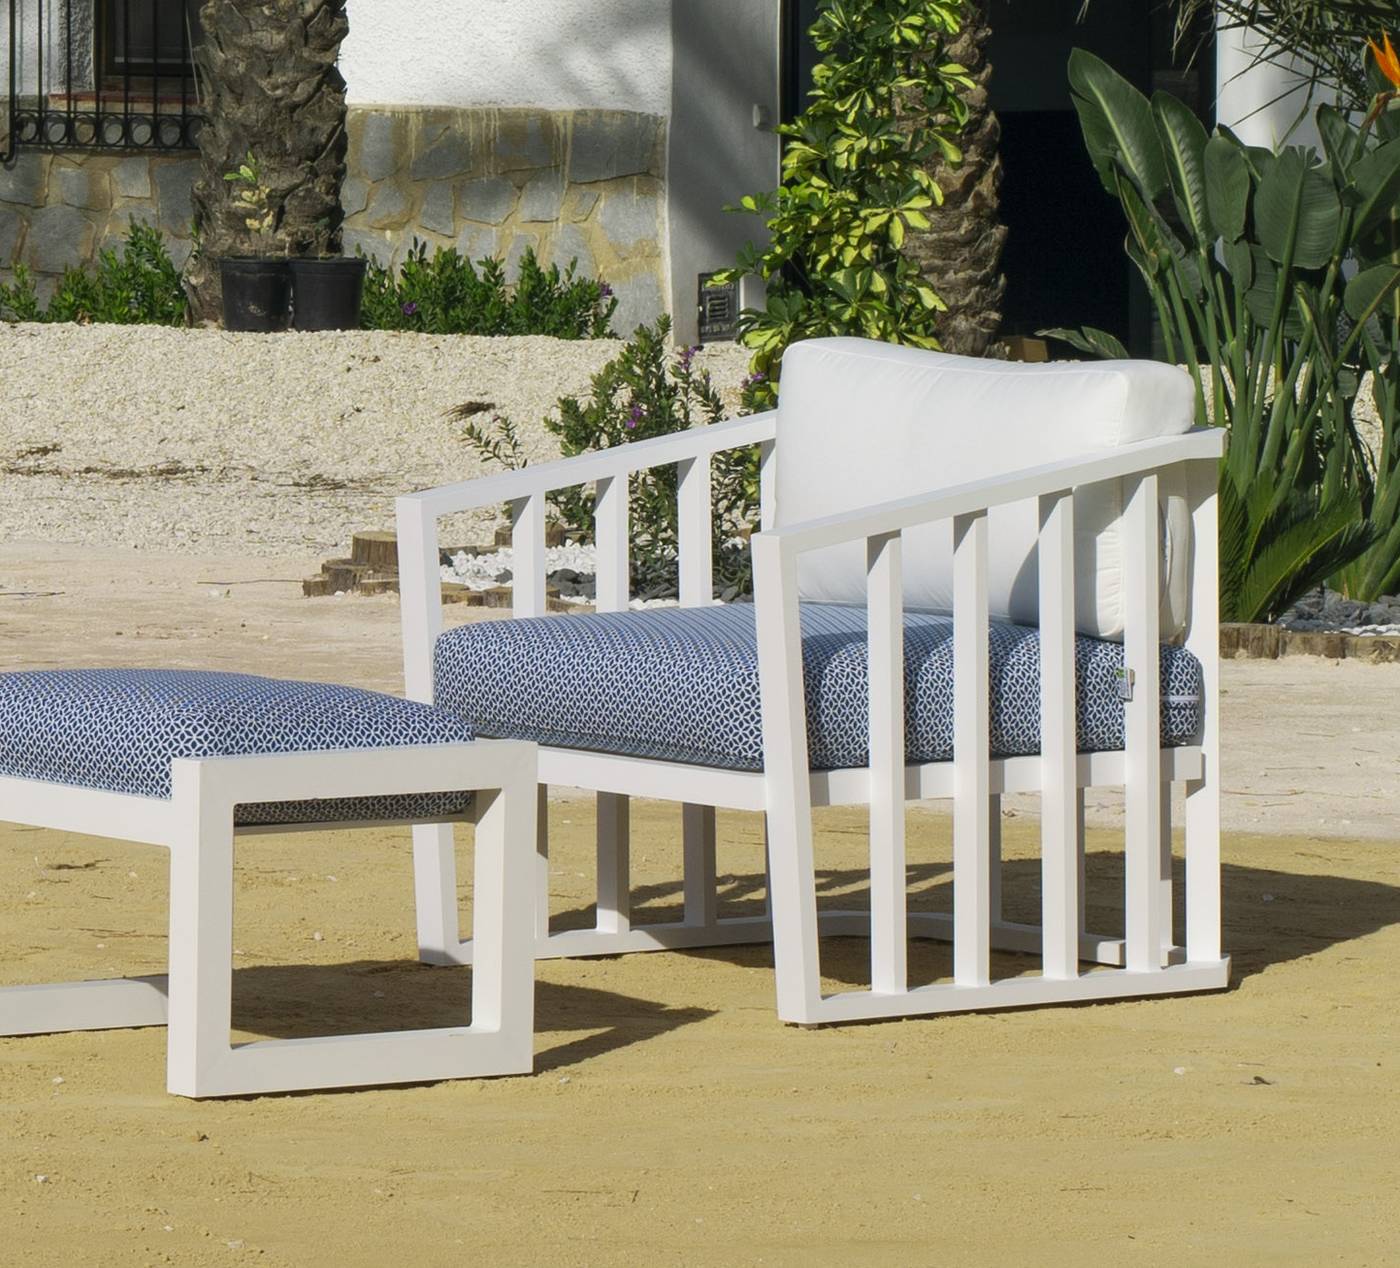 Set Aluminio Birmania-10 - Conjunto confort aluminio: 1 sofá 3 plazas + 2 sillones + 1 mesa de centro + 2 reposapiés + cojines. Disponible en color blanco o antracita.